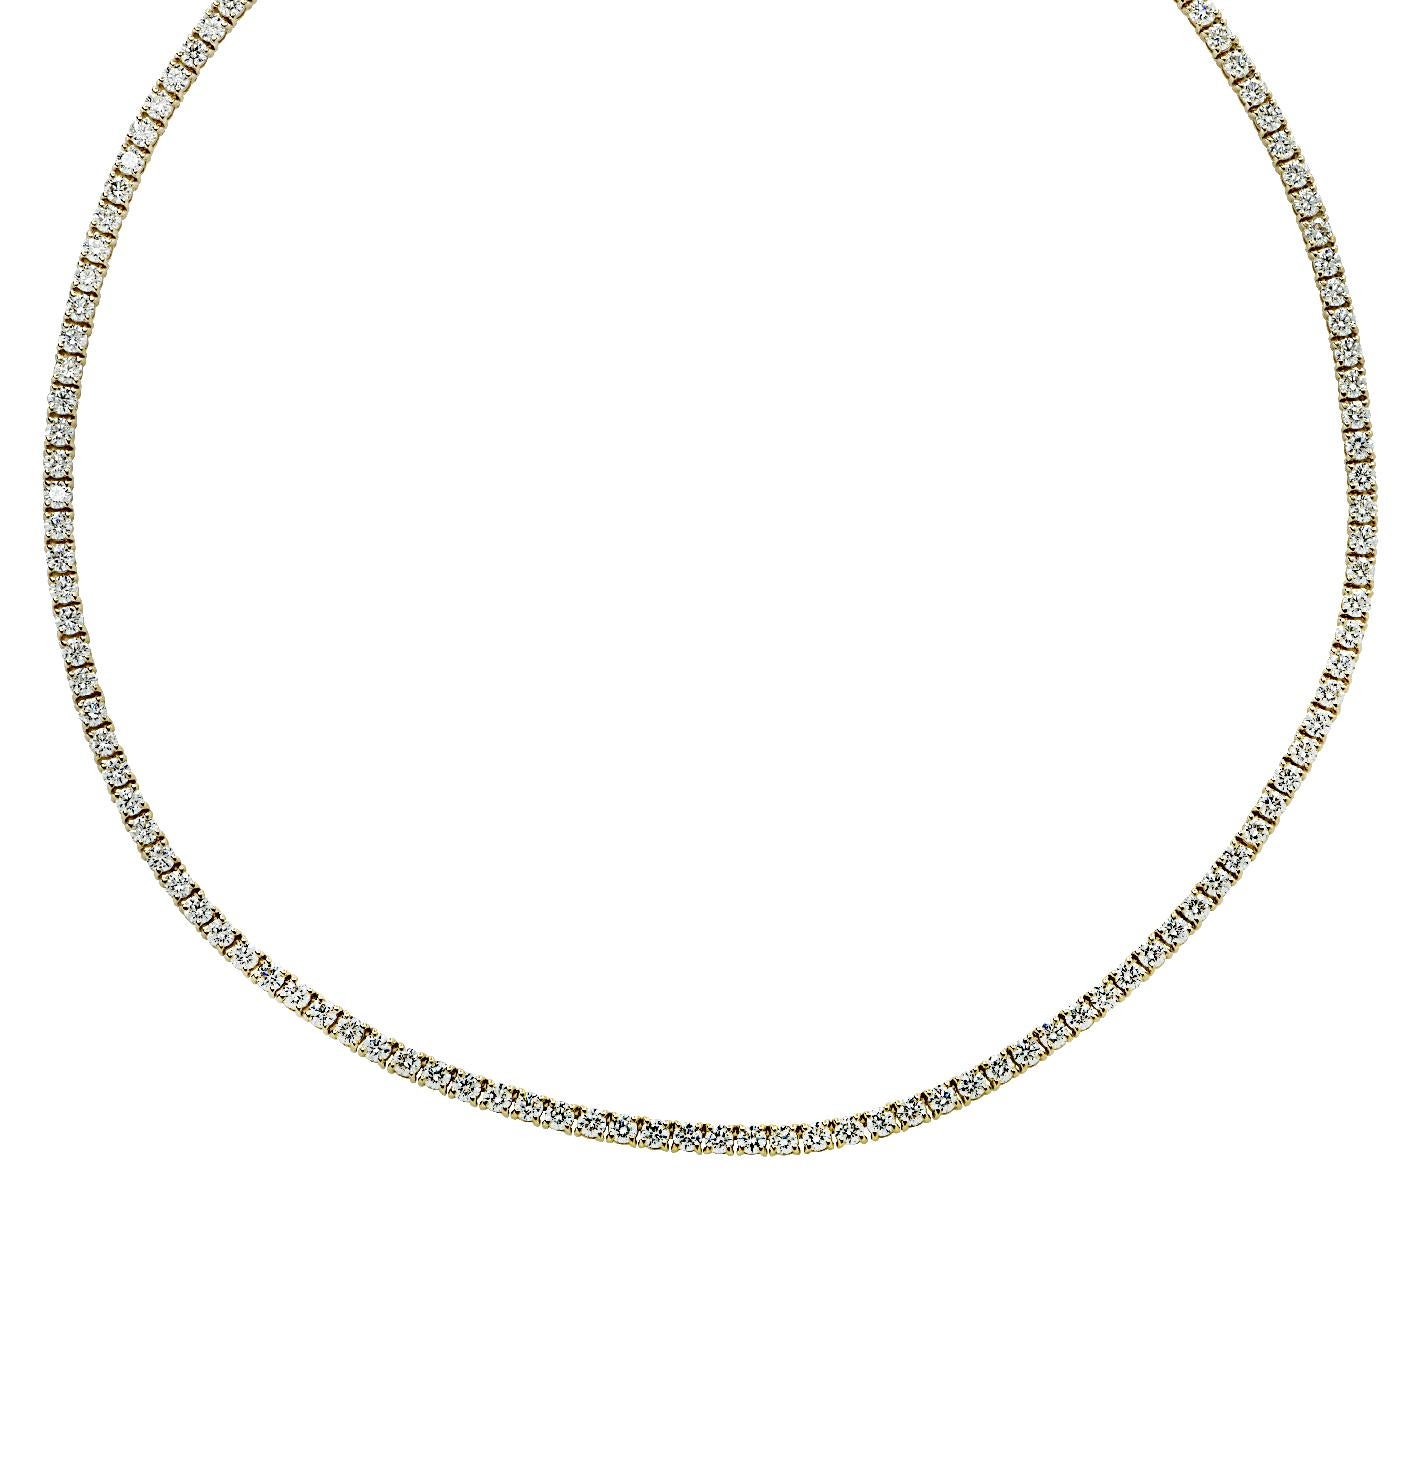 Round Cut Vivid Diamonds Straight Line 3.59 Carat Diamond Tennis Necklace